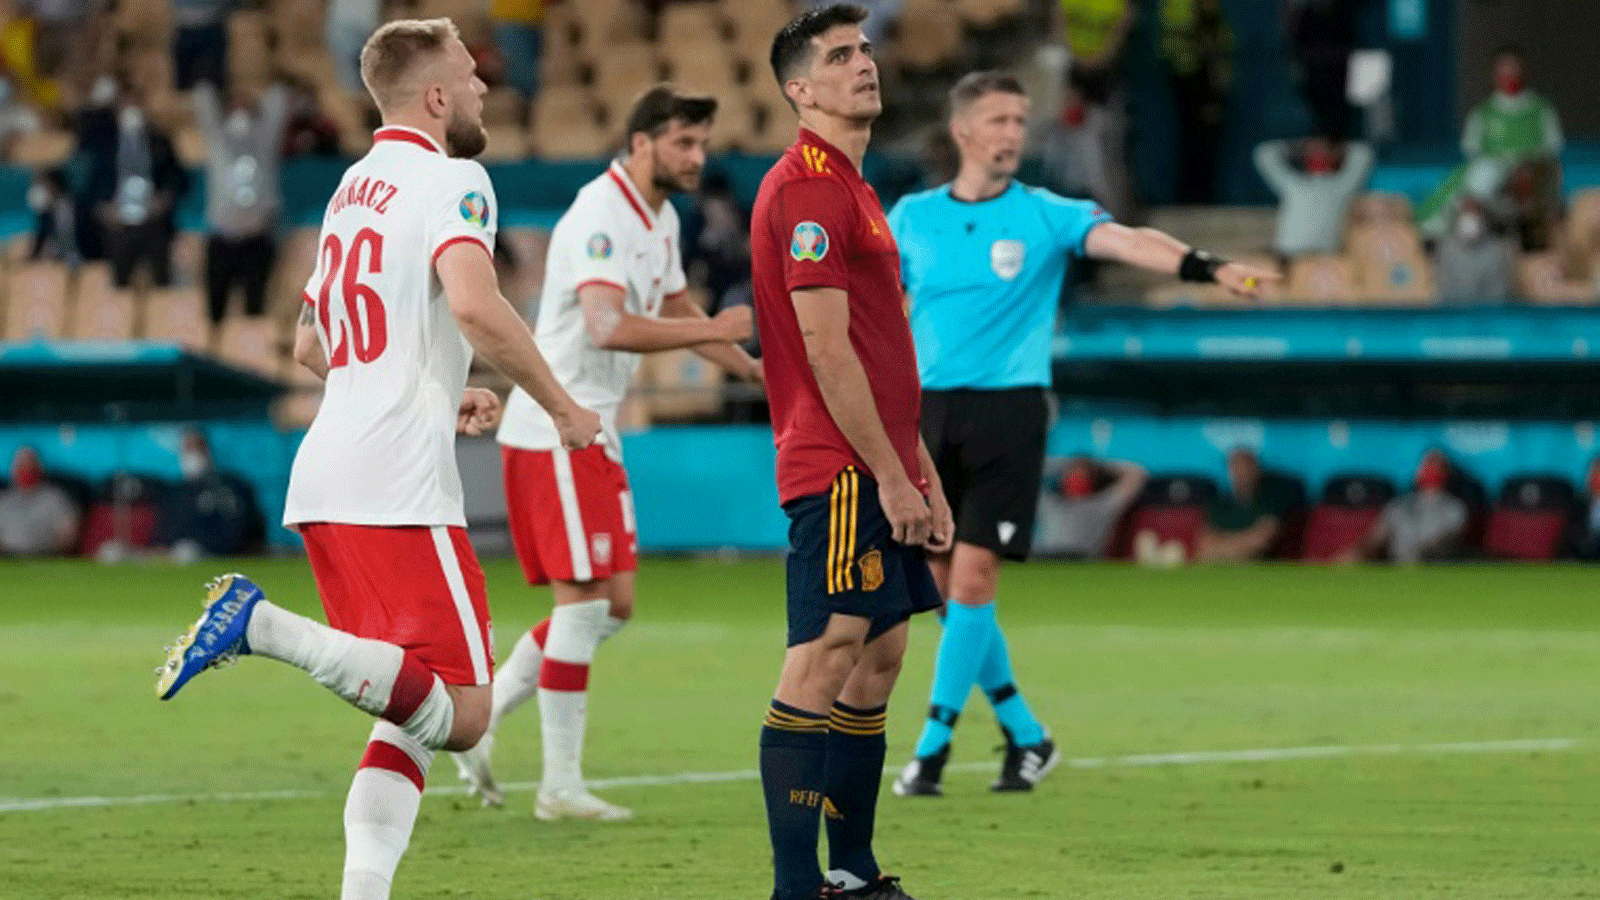 جيرارد مورينو بعد إهداره ركلة جزاء لاسبانيا ضد بولندا في كأس أوروبا لكرة القدم في ملعب 